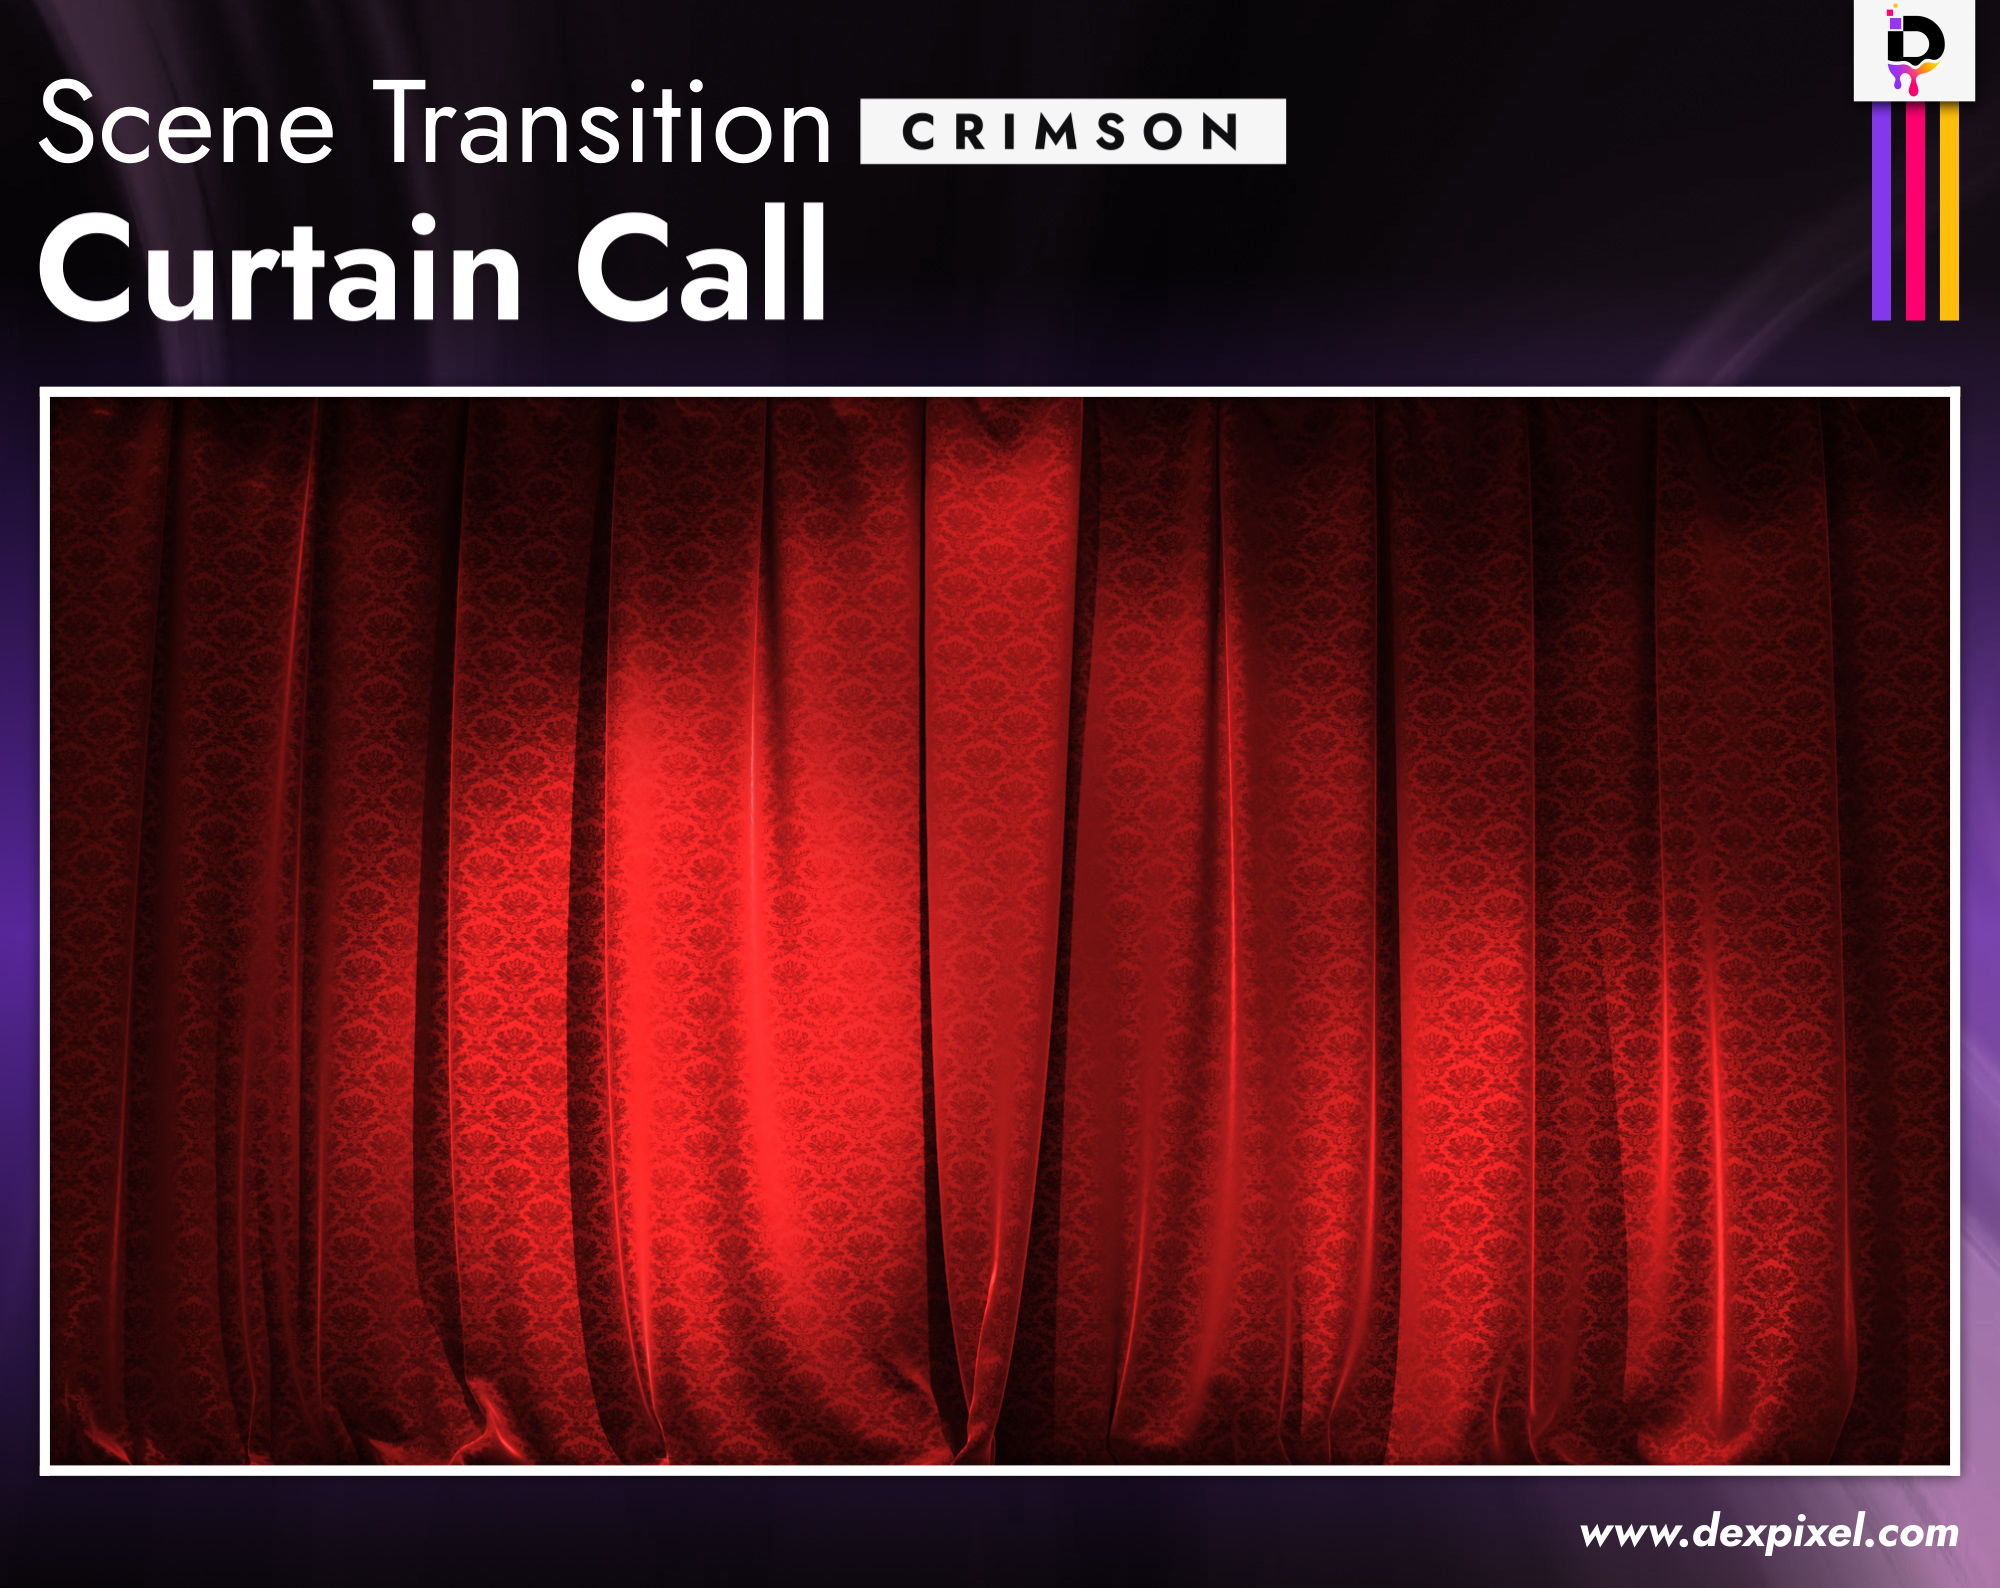 Scene Transition Dexpixel Curtain Call Crimson